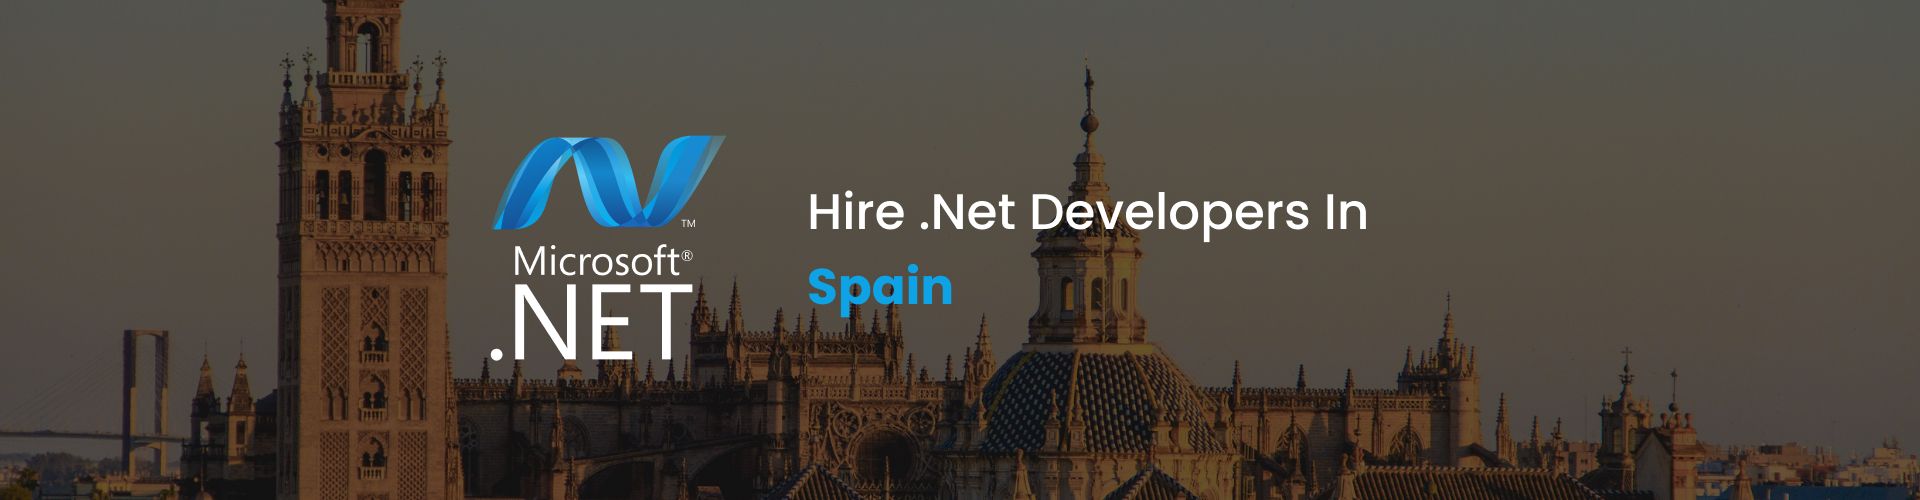 hire .net developers in spain